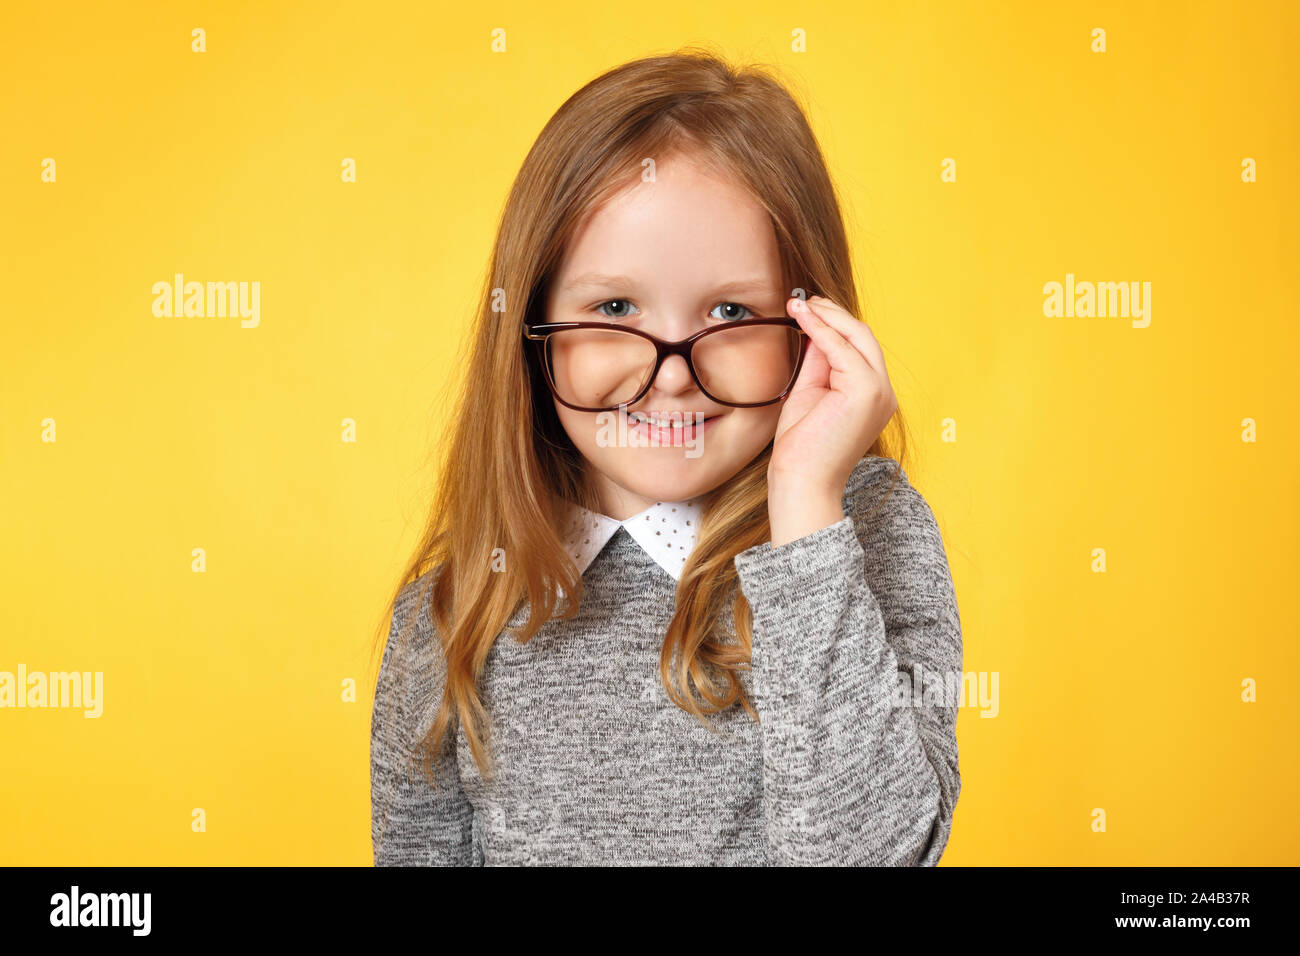 Clever girl écolière avec lunettes. Un enfant dans un chandail gris sur fond jaune. Banque D'Images